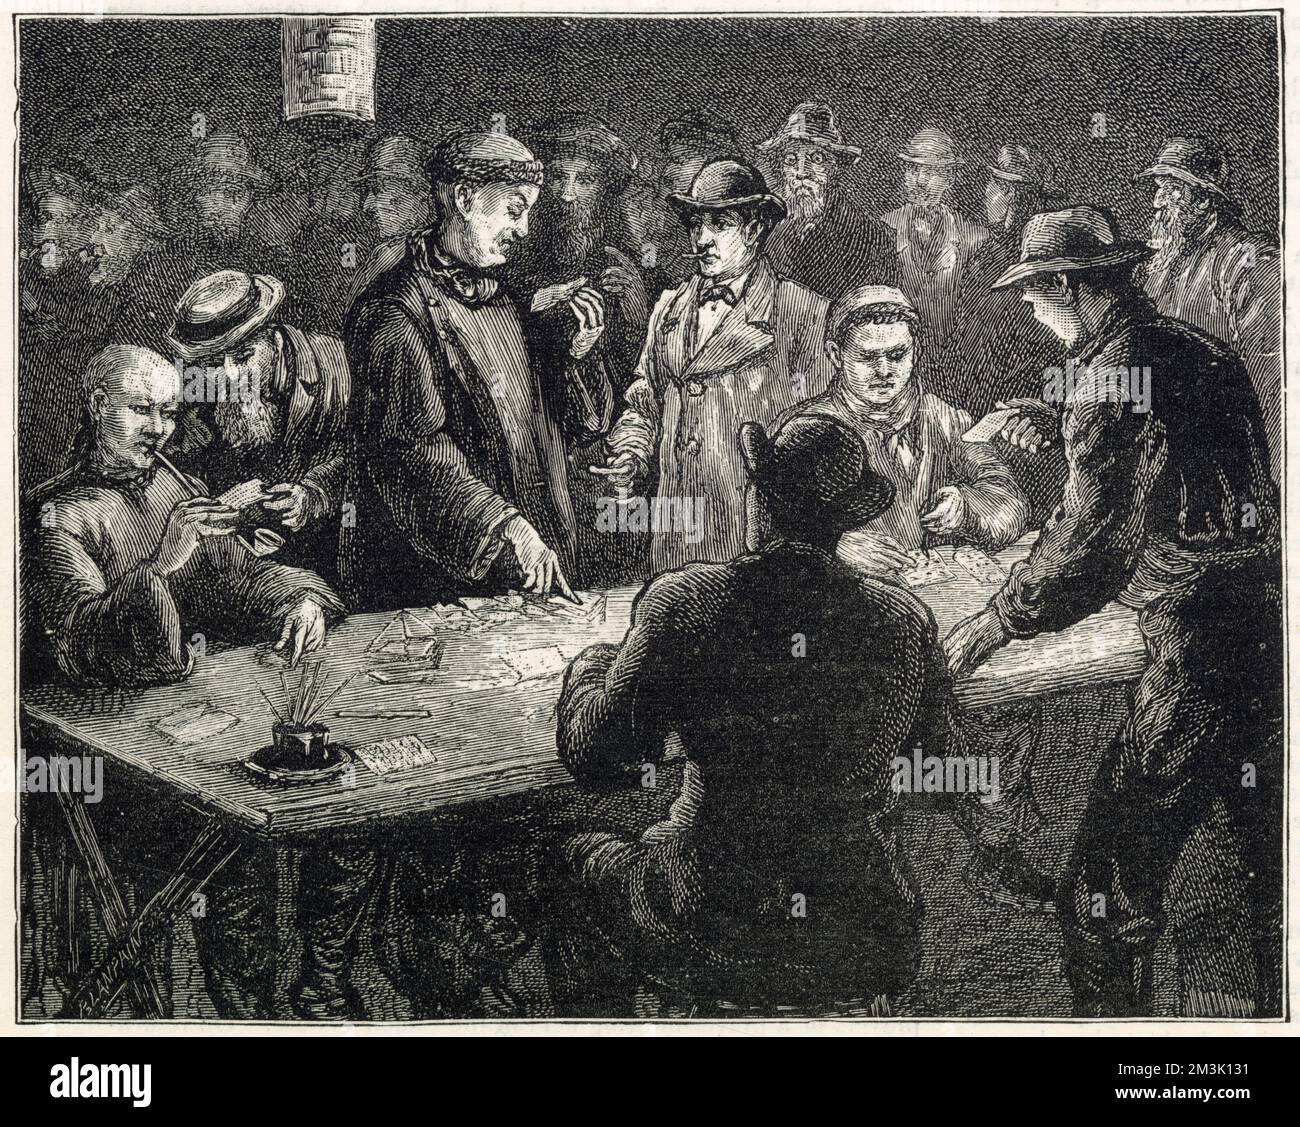 Eine Gruppe chinesischer Männer, in traditioneller Kleidung, und weiße Amerikaner, die spielen, San Francisco. Die Männer werden um einen Kartentisch versammelt gesehen, während ein Spiel läuft. Die Karten enthalten eine Auswahl an Markern, Papier und Stiften, um Tickets für die Lotterie zu erstellen. Stockfoto